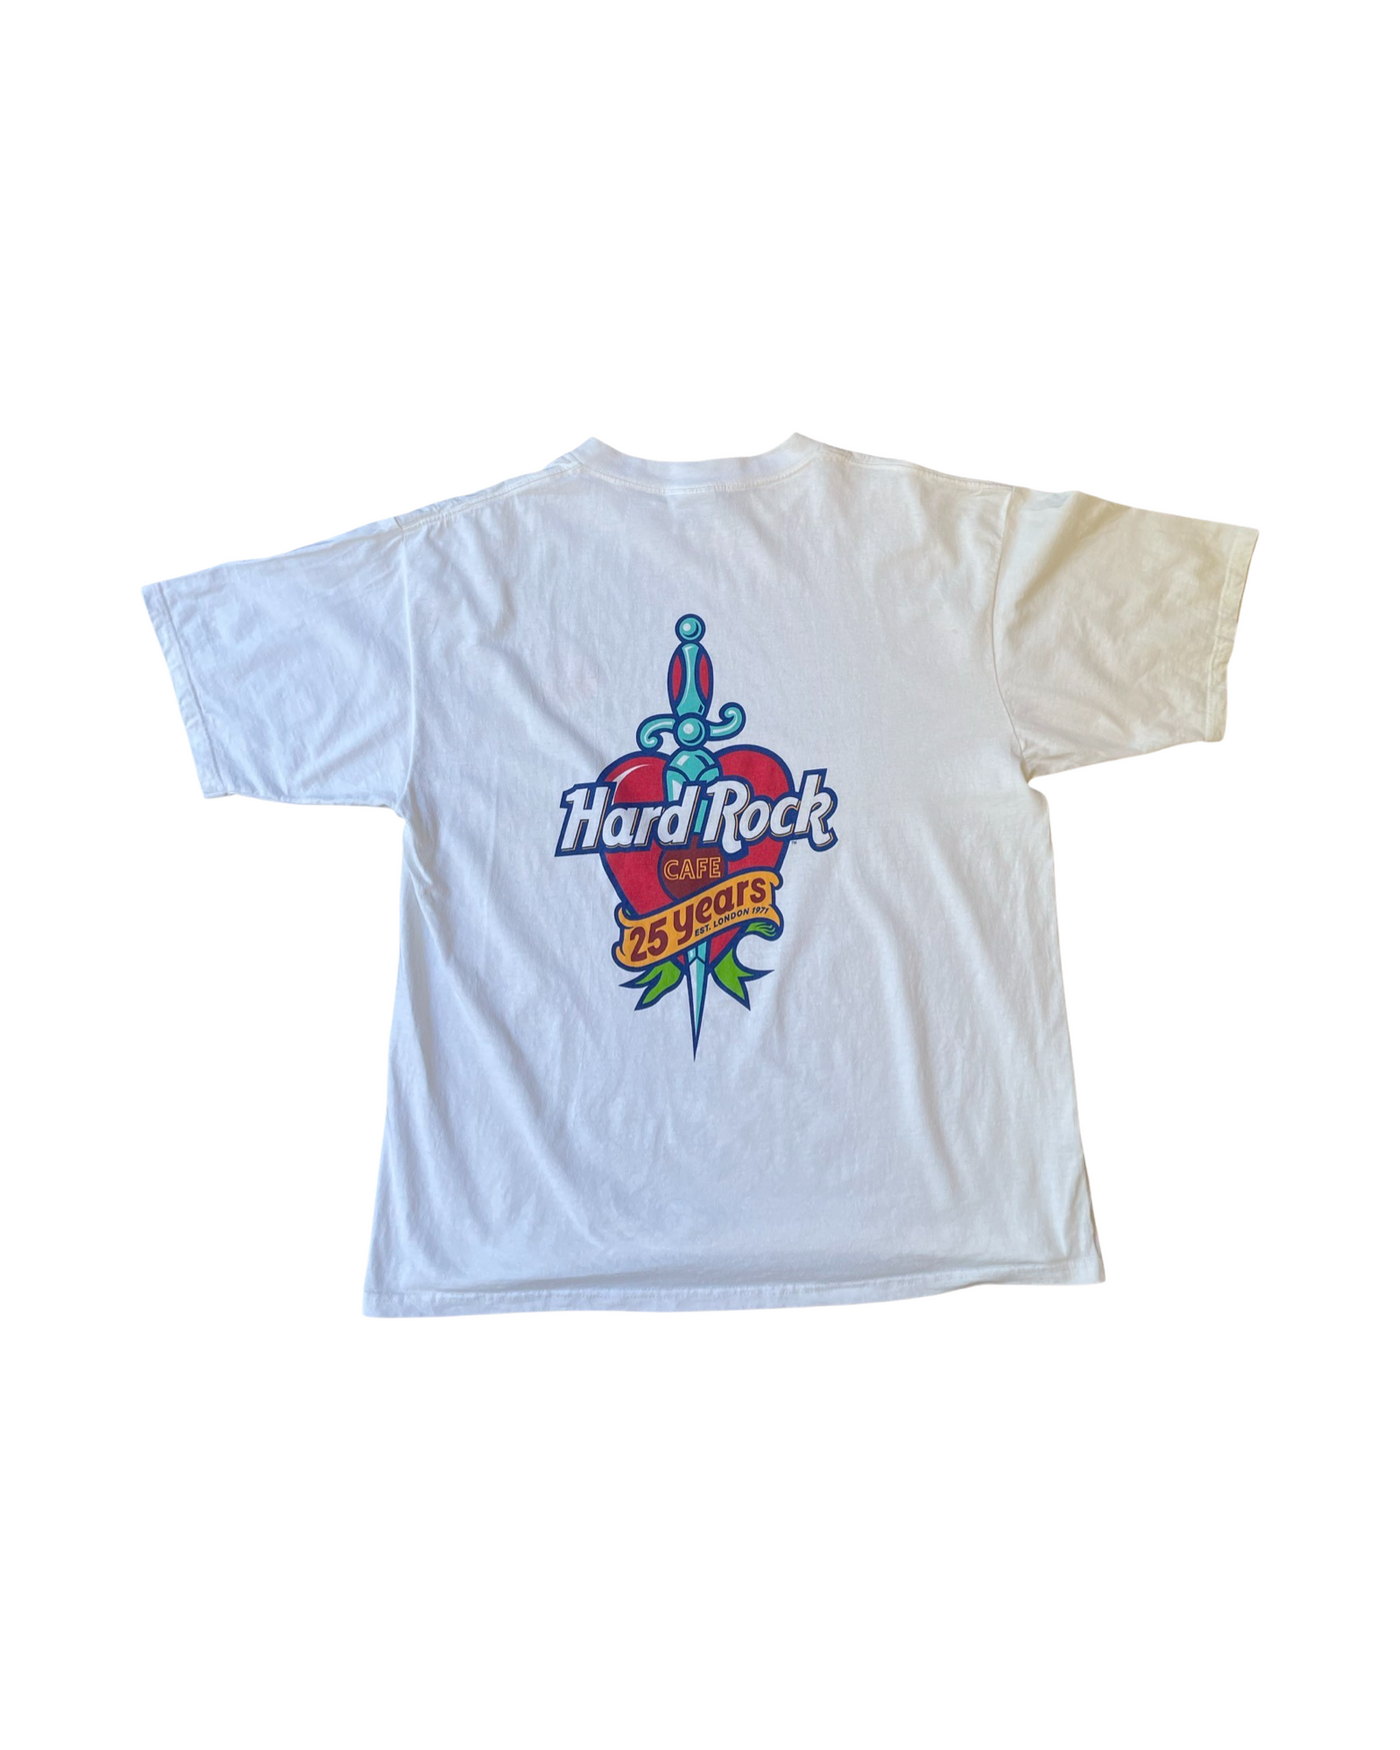 Vintage Hard Rock Cafe T-Shirt Size XL